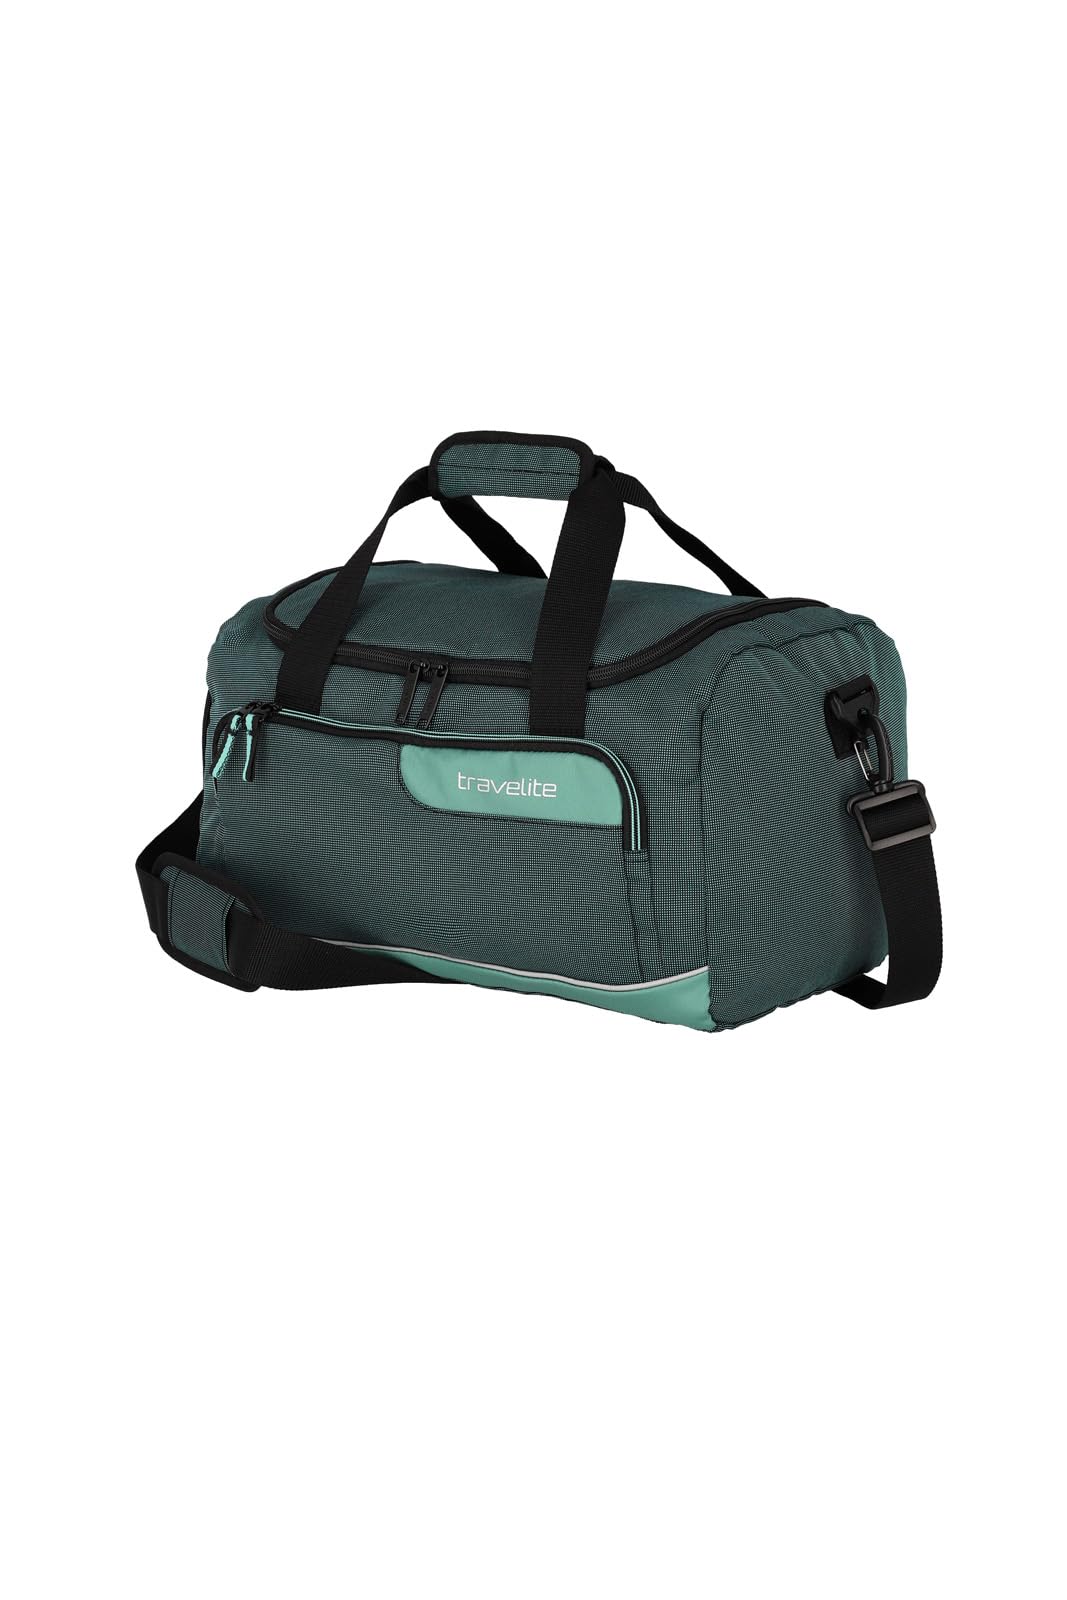 Travelite Reisetasche Handgepäck, Weekender, nachhaltig, VIIA, leichte kleine Reisetasche aus recyceltem Material für Urlaub und Sport, 40 cm, 23 Liter